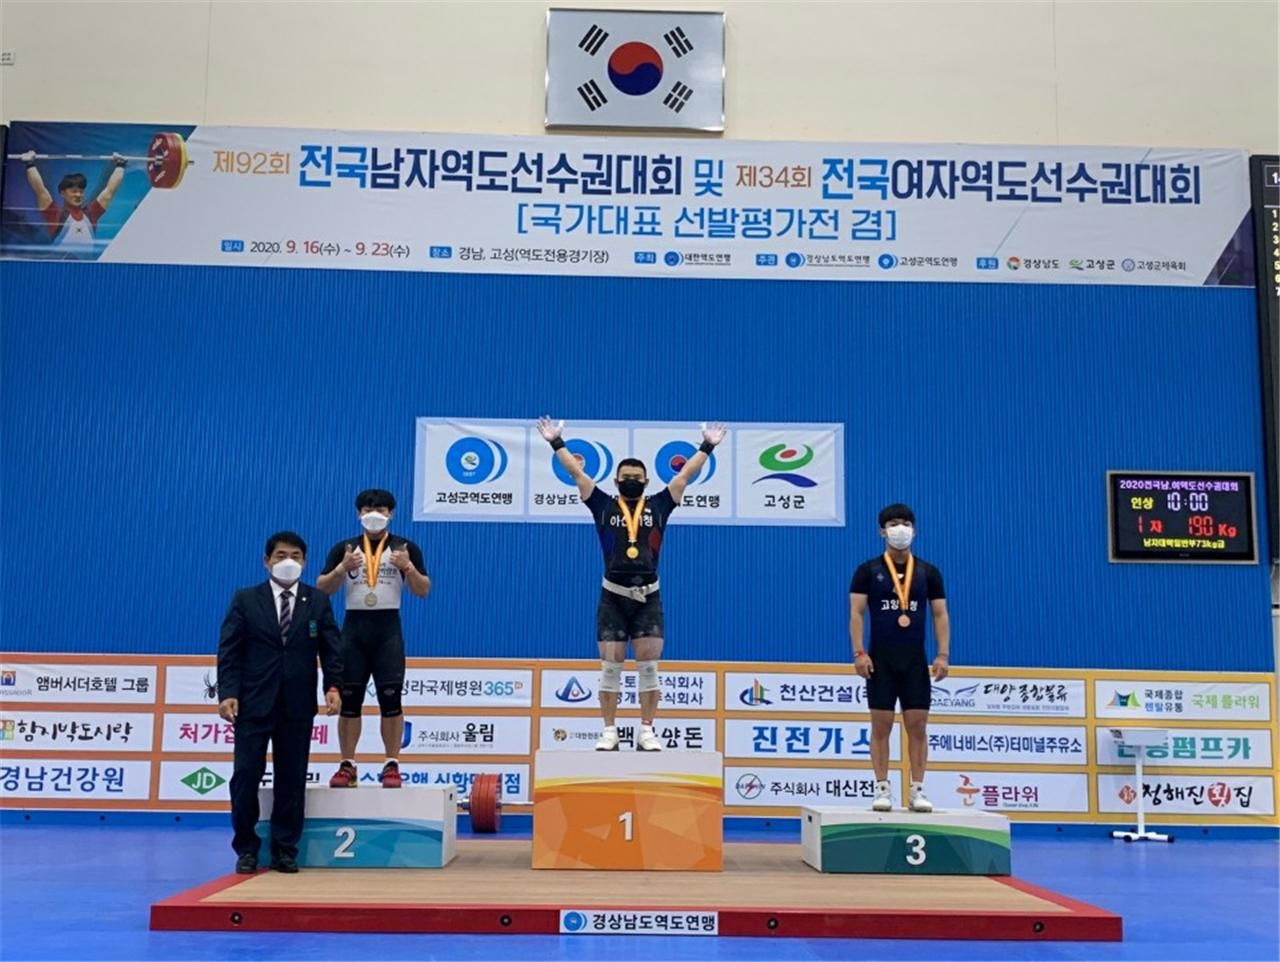 남자 73kg급에 출전한 신비 선수는 용상 179kg 2위로 한국주니어 신기록, 합계 321kg 2위로 지난 대회에서 수립한 자신의 한국주니어 신기록(합계 318kg)을 경신하며 금메달 1개와 은메달 2개를 획득했다.<사진=완도군>